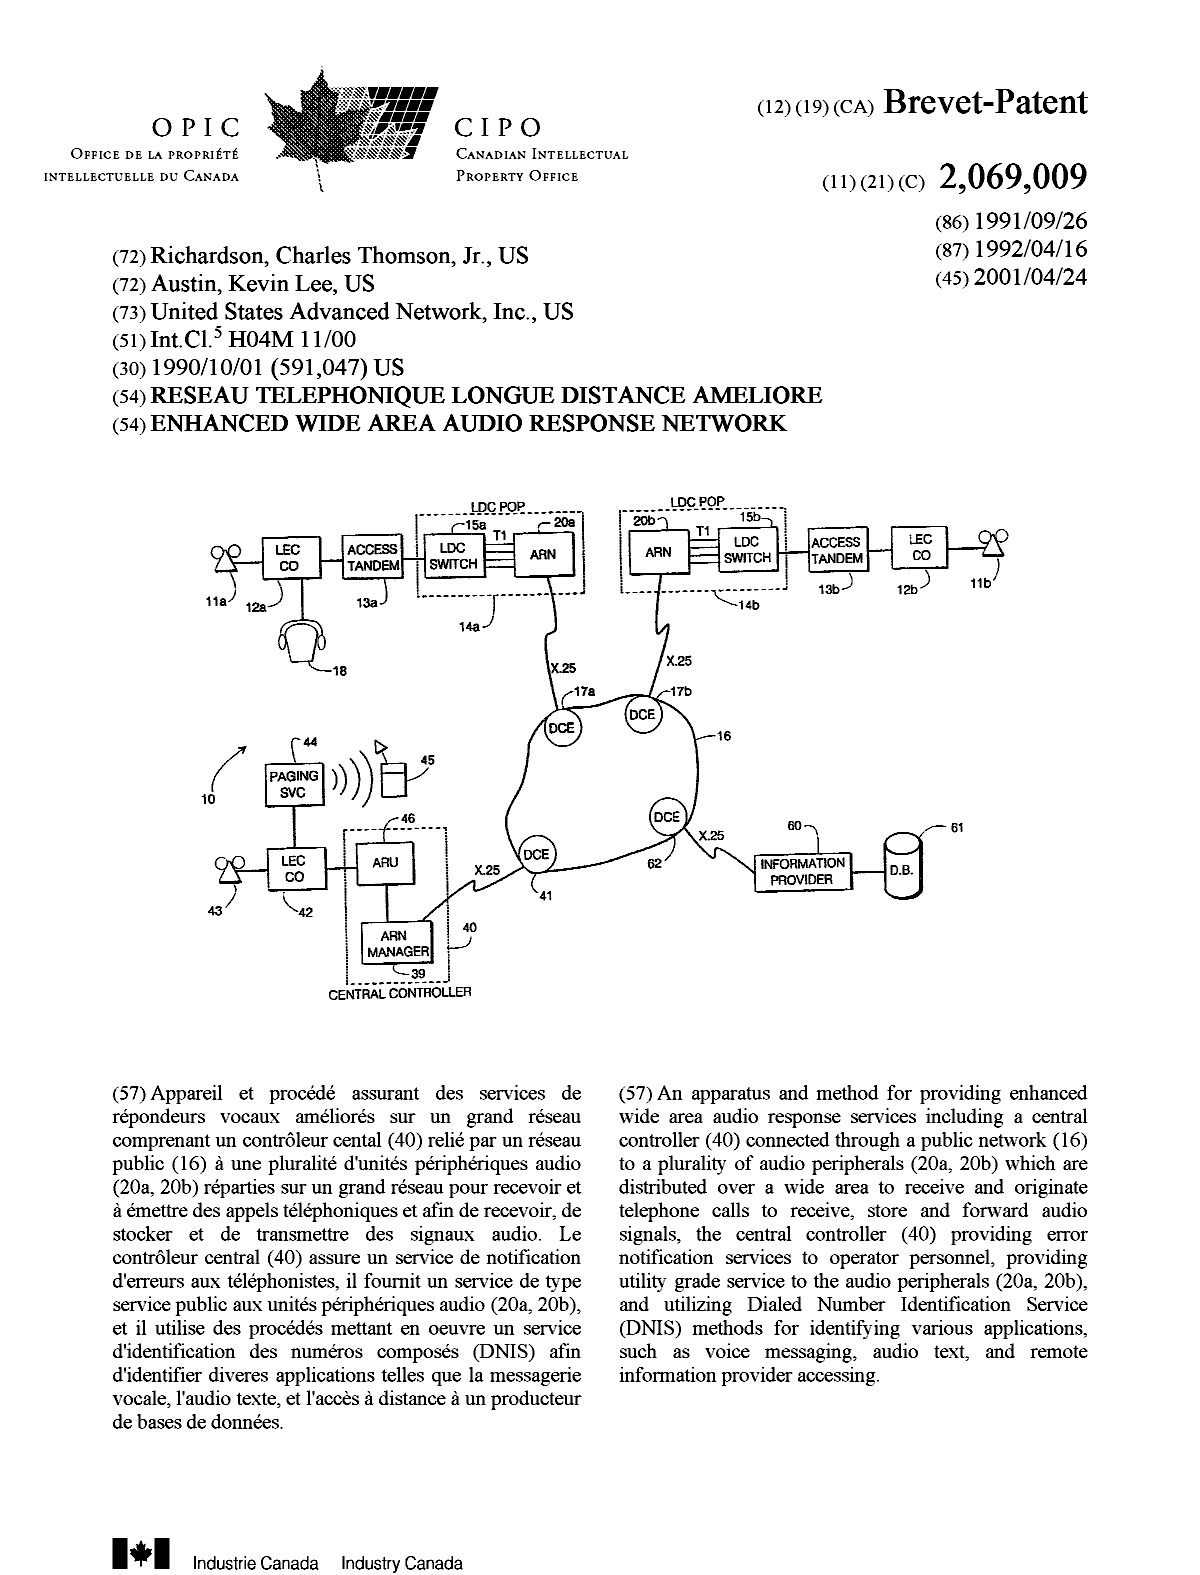 Document de brevet canadien 2069009. Page couverture 20010410. Image 1 de 1